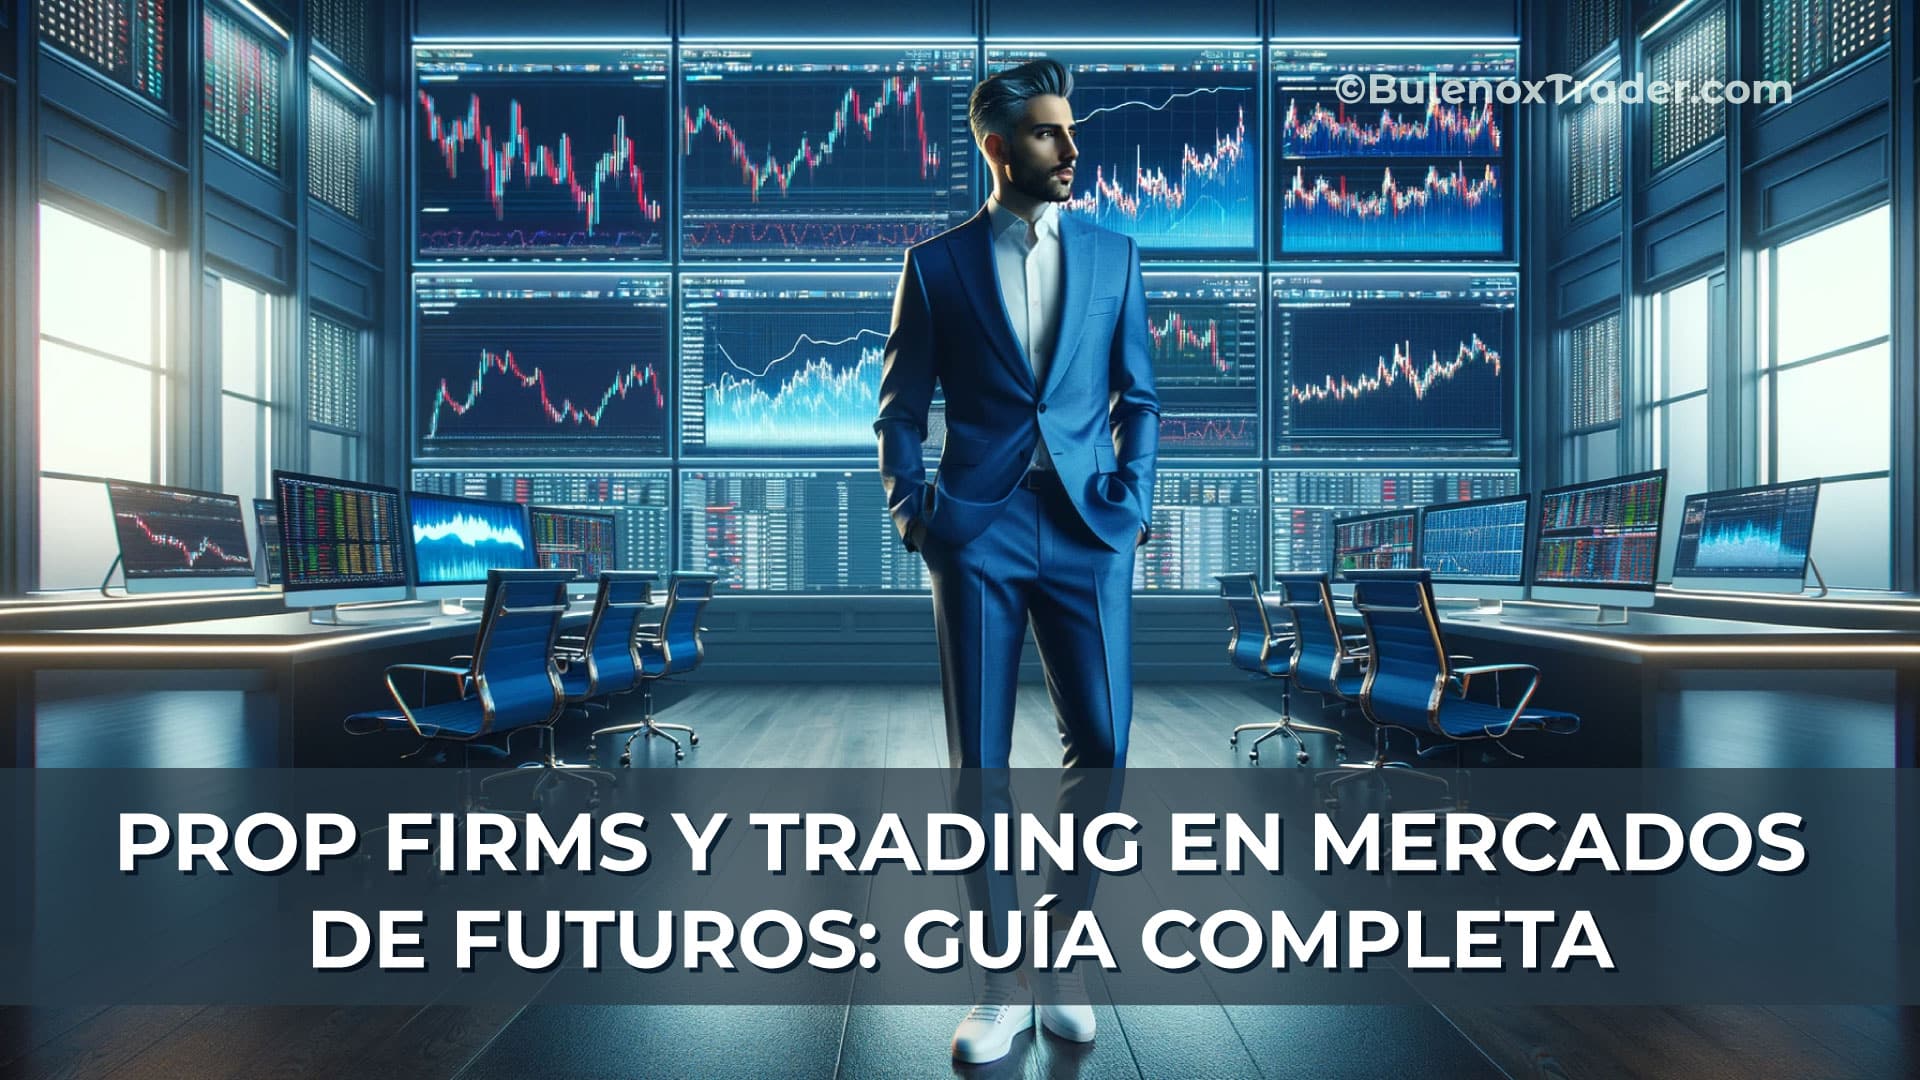 Prop-Firms-y-Trading-en-Mercados-de-Futuros-Guía-Completa-on-Bulenox-Trader-Website